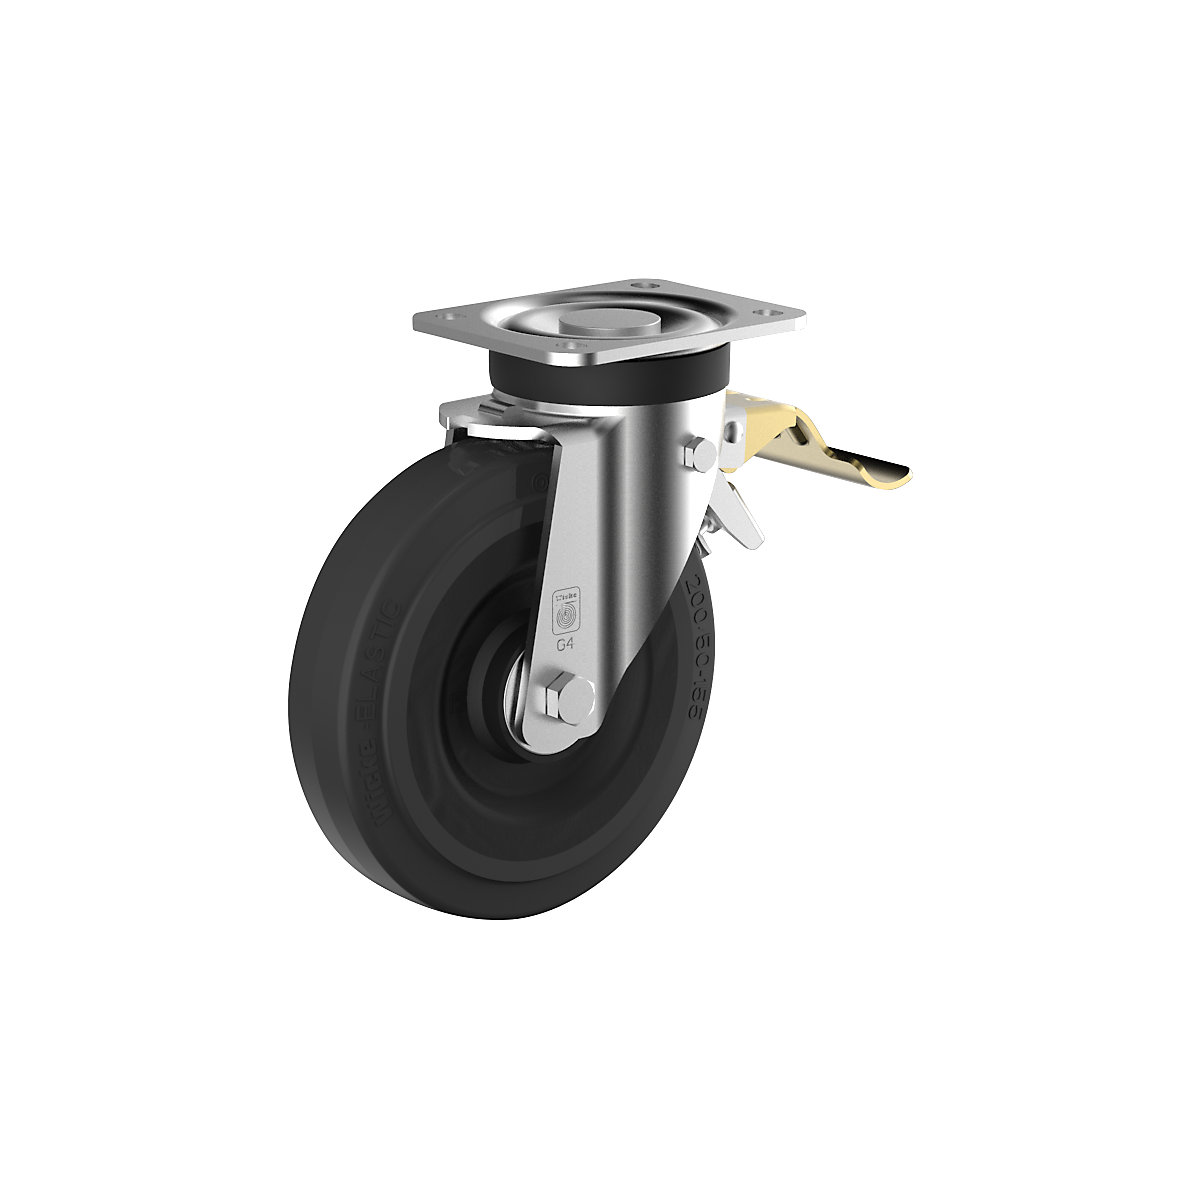 Elastické celopryžové kolo na ocelovém disku – Wicke, Ø kola x šířka 250 x 60 mm, otočné kolo s dvojitou brzdou-2